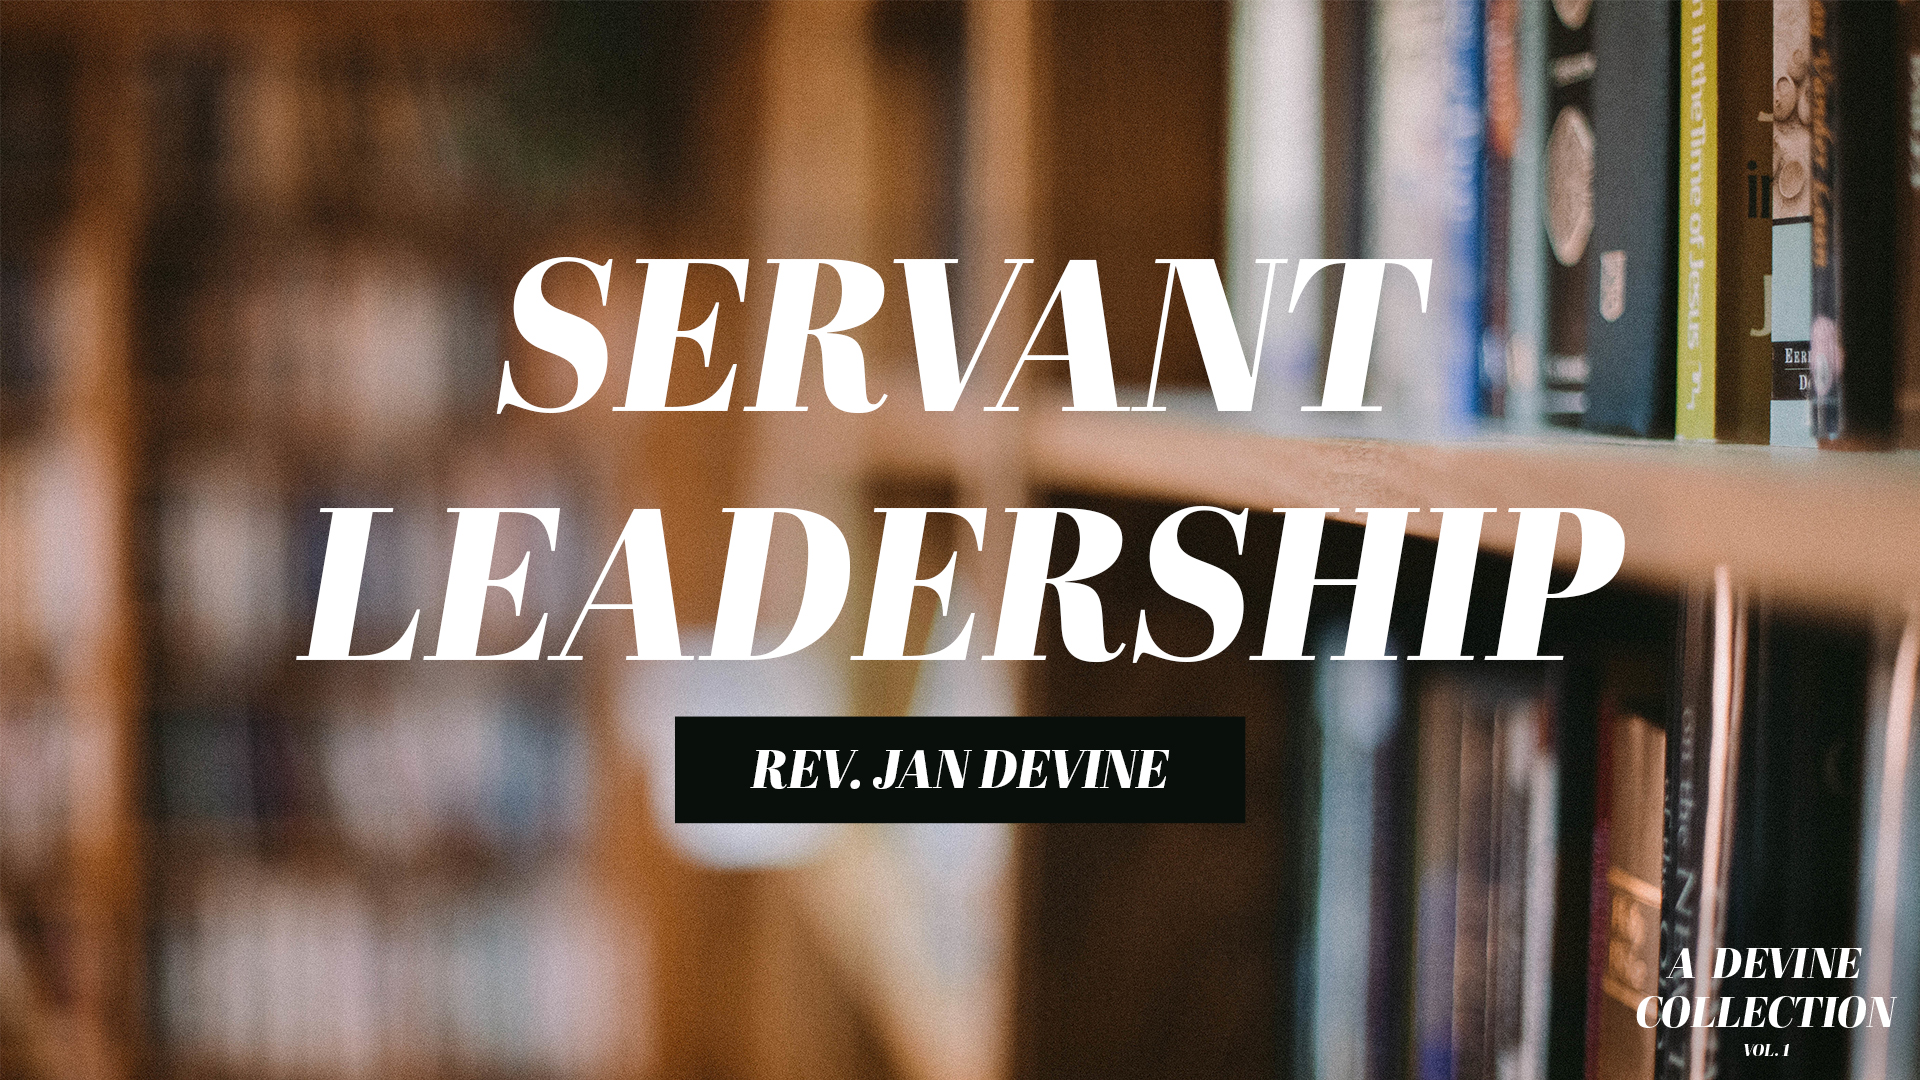 Servant Leadership Image